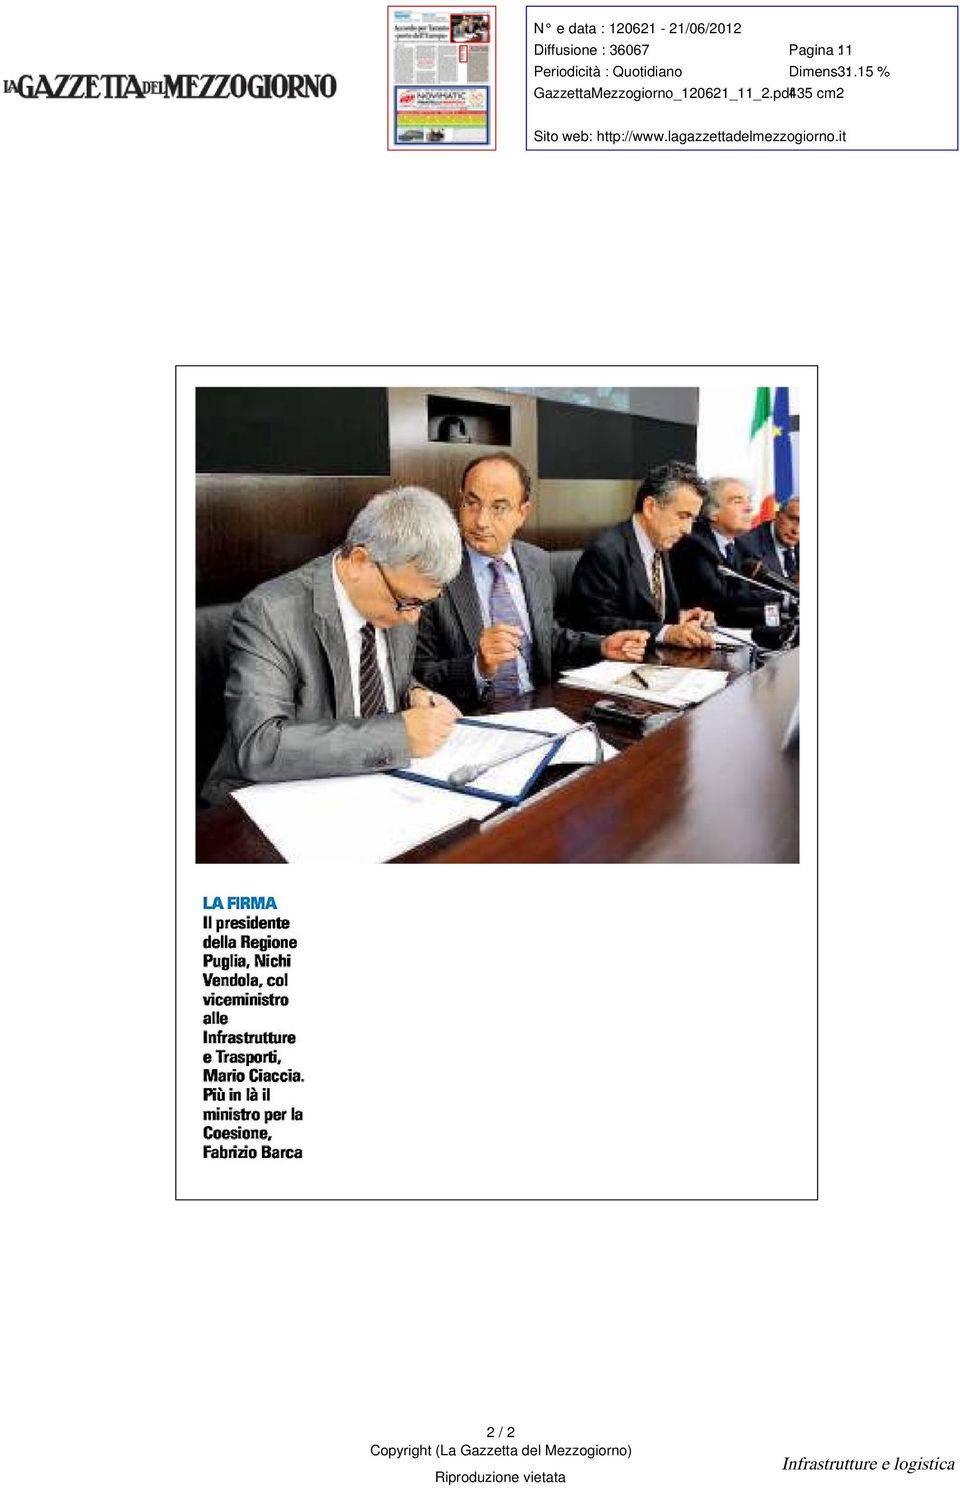 Ilpresidente del Regione Puglia Nichi Vendo col viceministro alle Infrastrutture e Trasporti